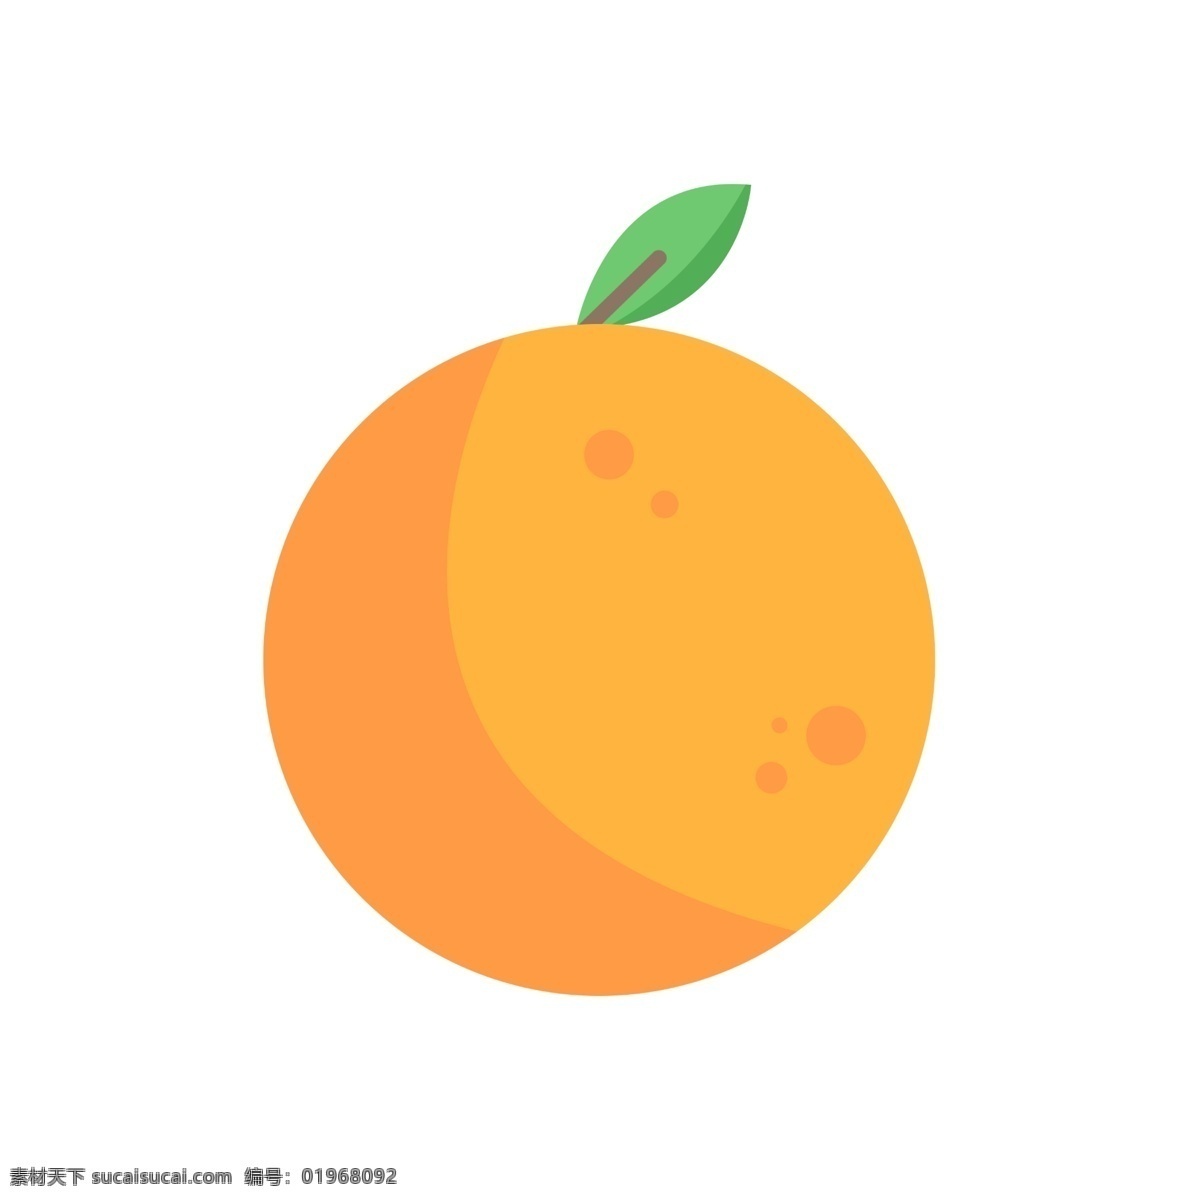 水果 图标 元素 橙子 ppt图标 简约风格 水果图标 海报图标 橙子水果 免 扣 图案